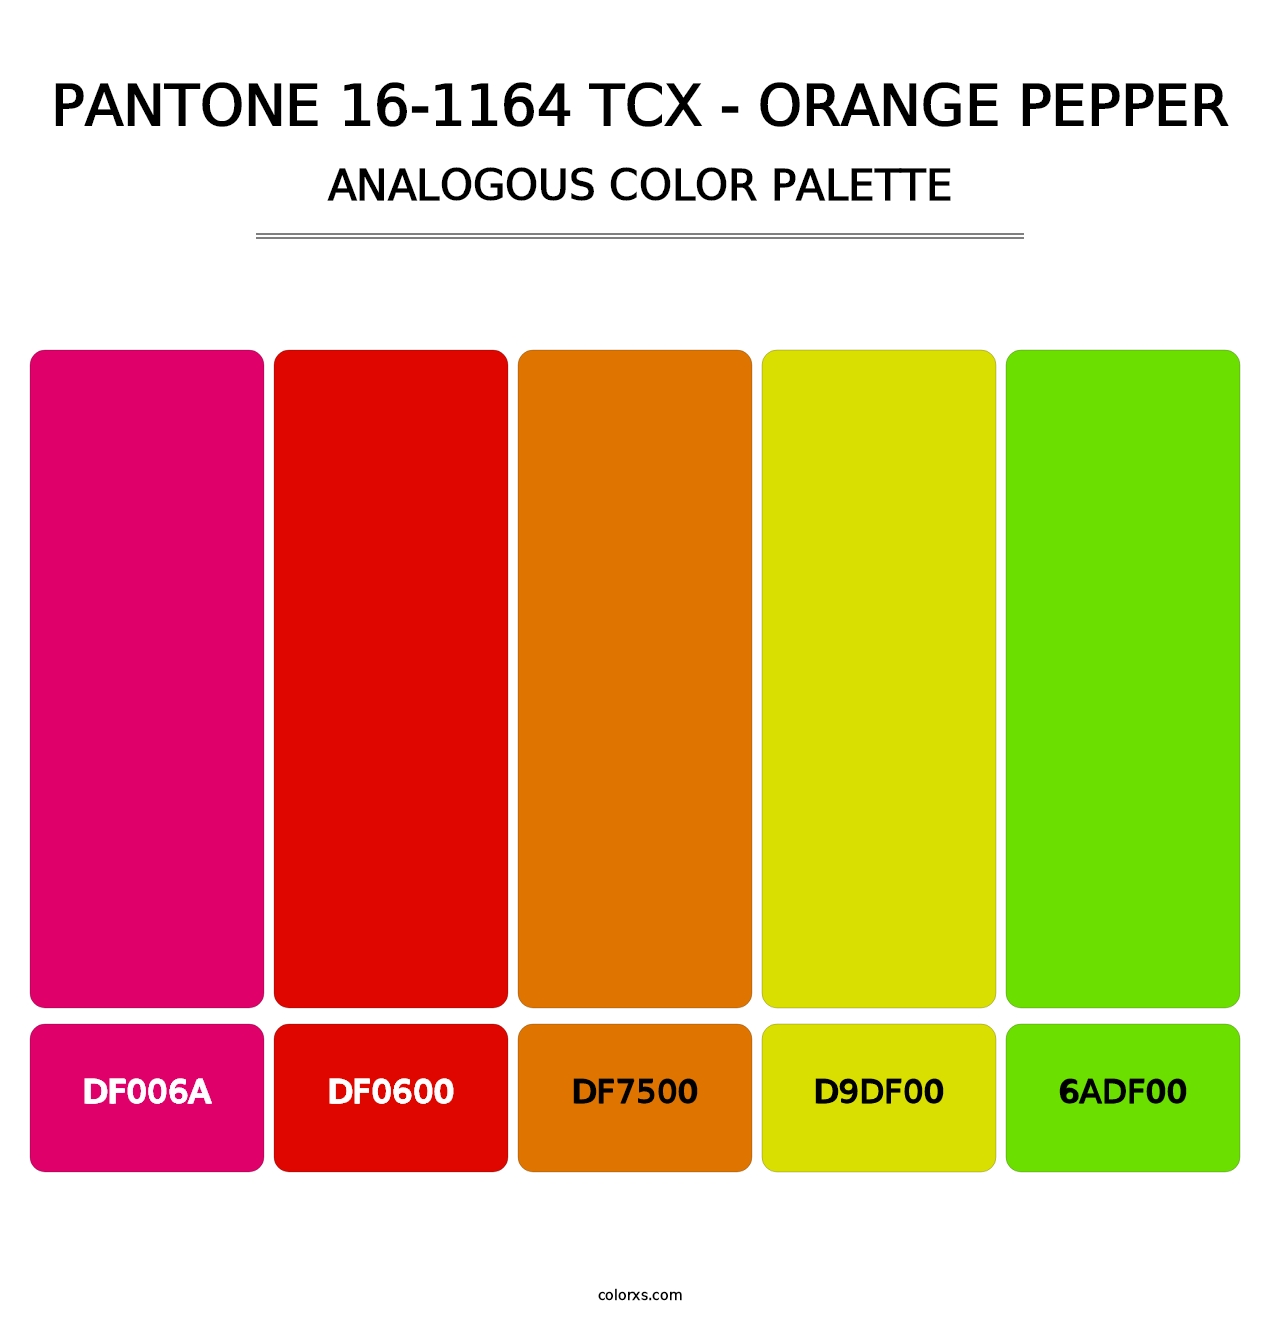 PANTONE 16-1164 TCX - Orange Pepper - Analogous Color Palette